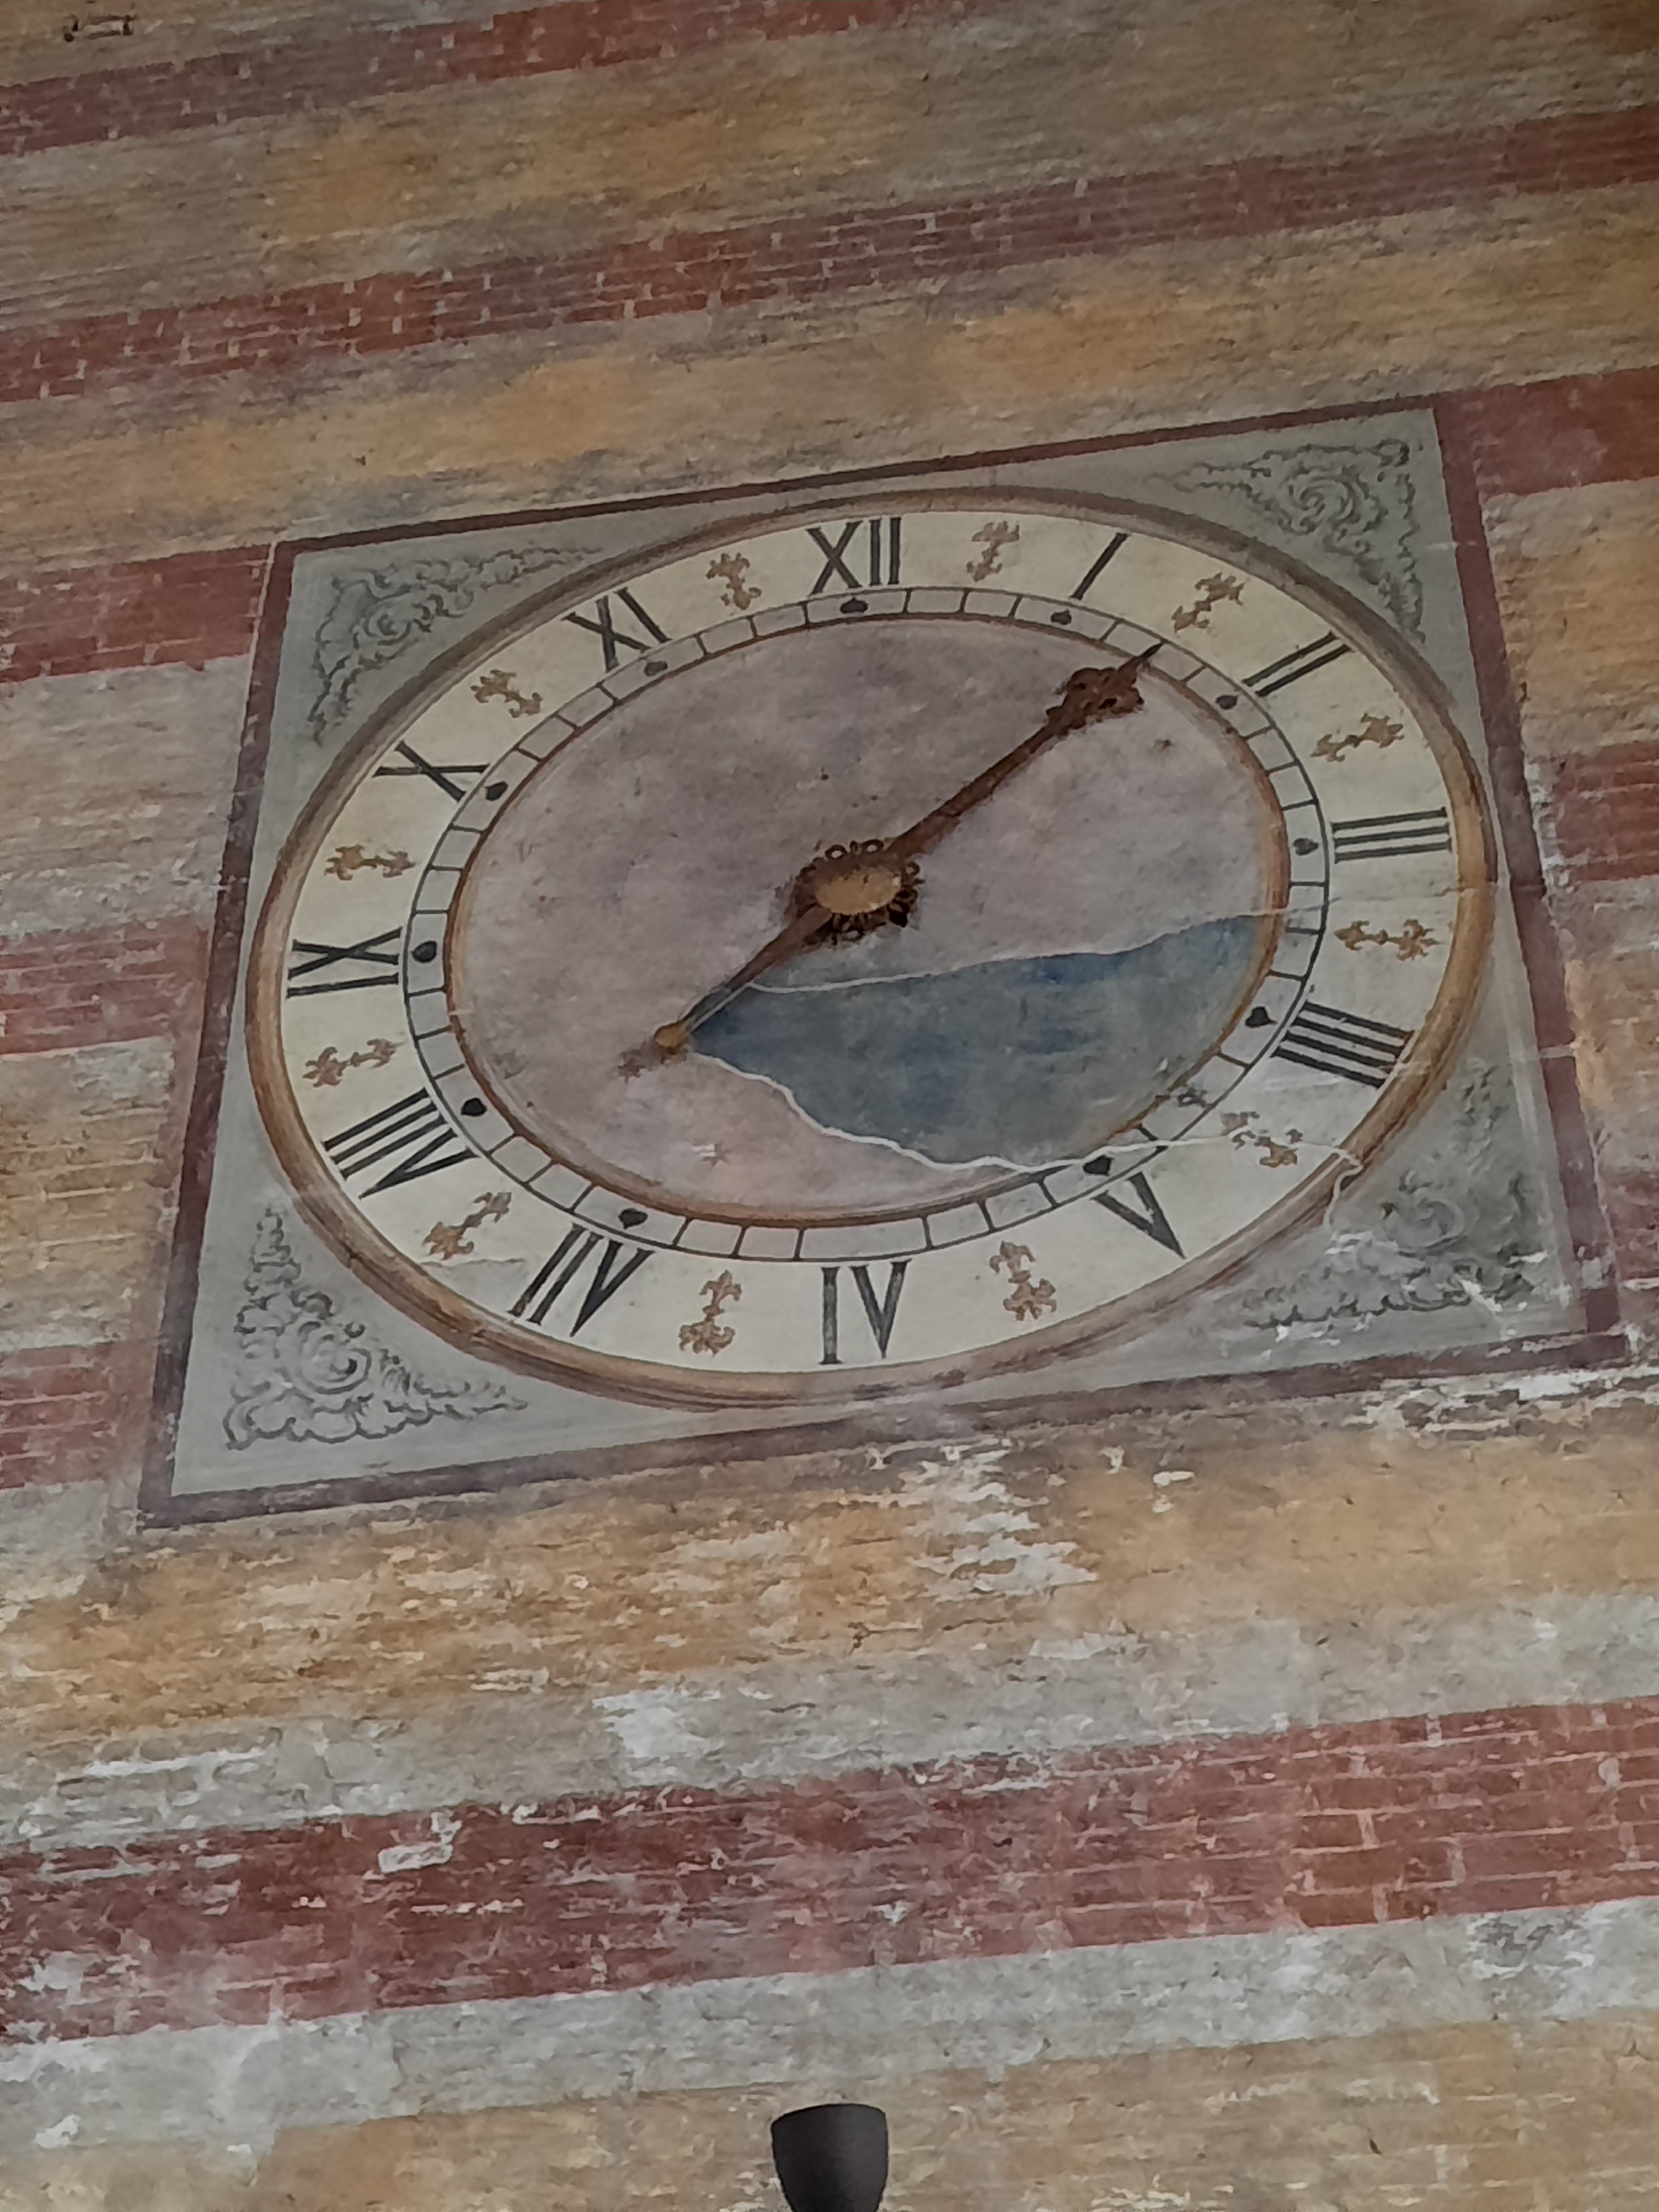 El reloj de la “chiesa degli Eremitani”. Padova.